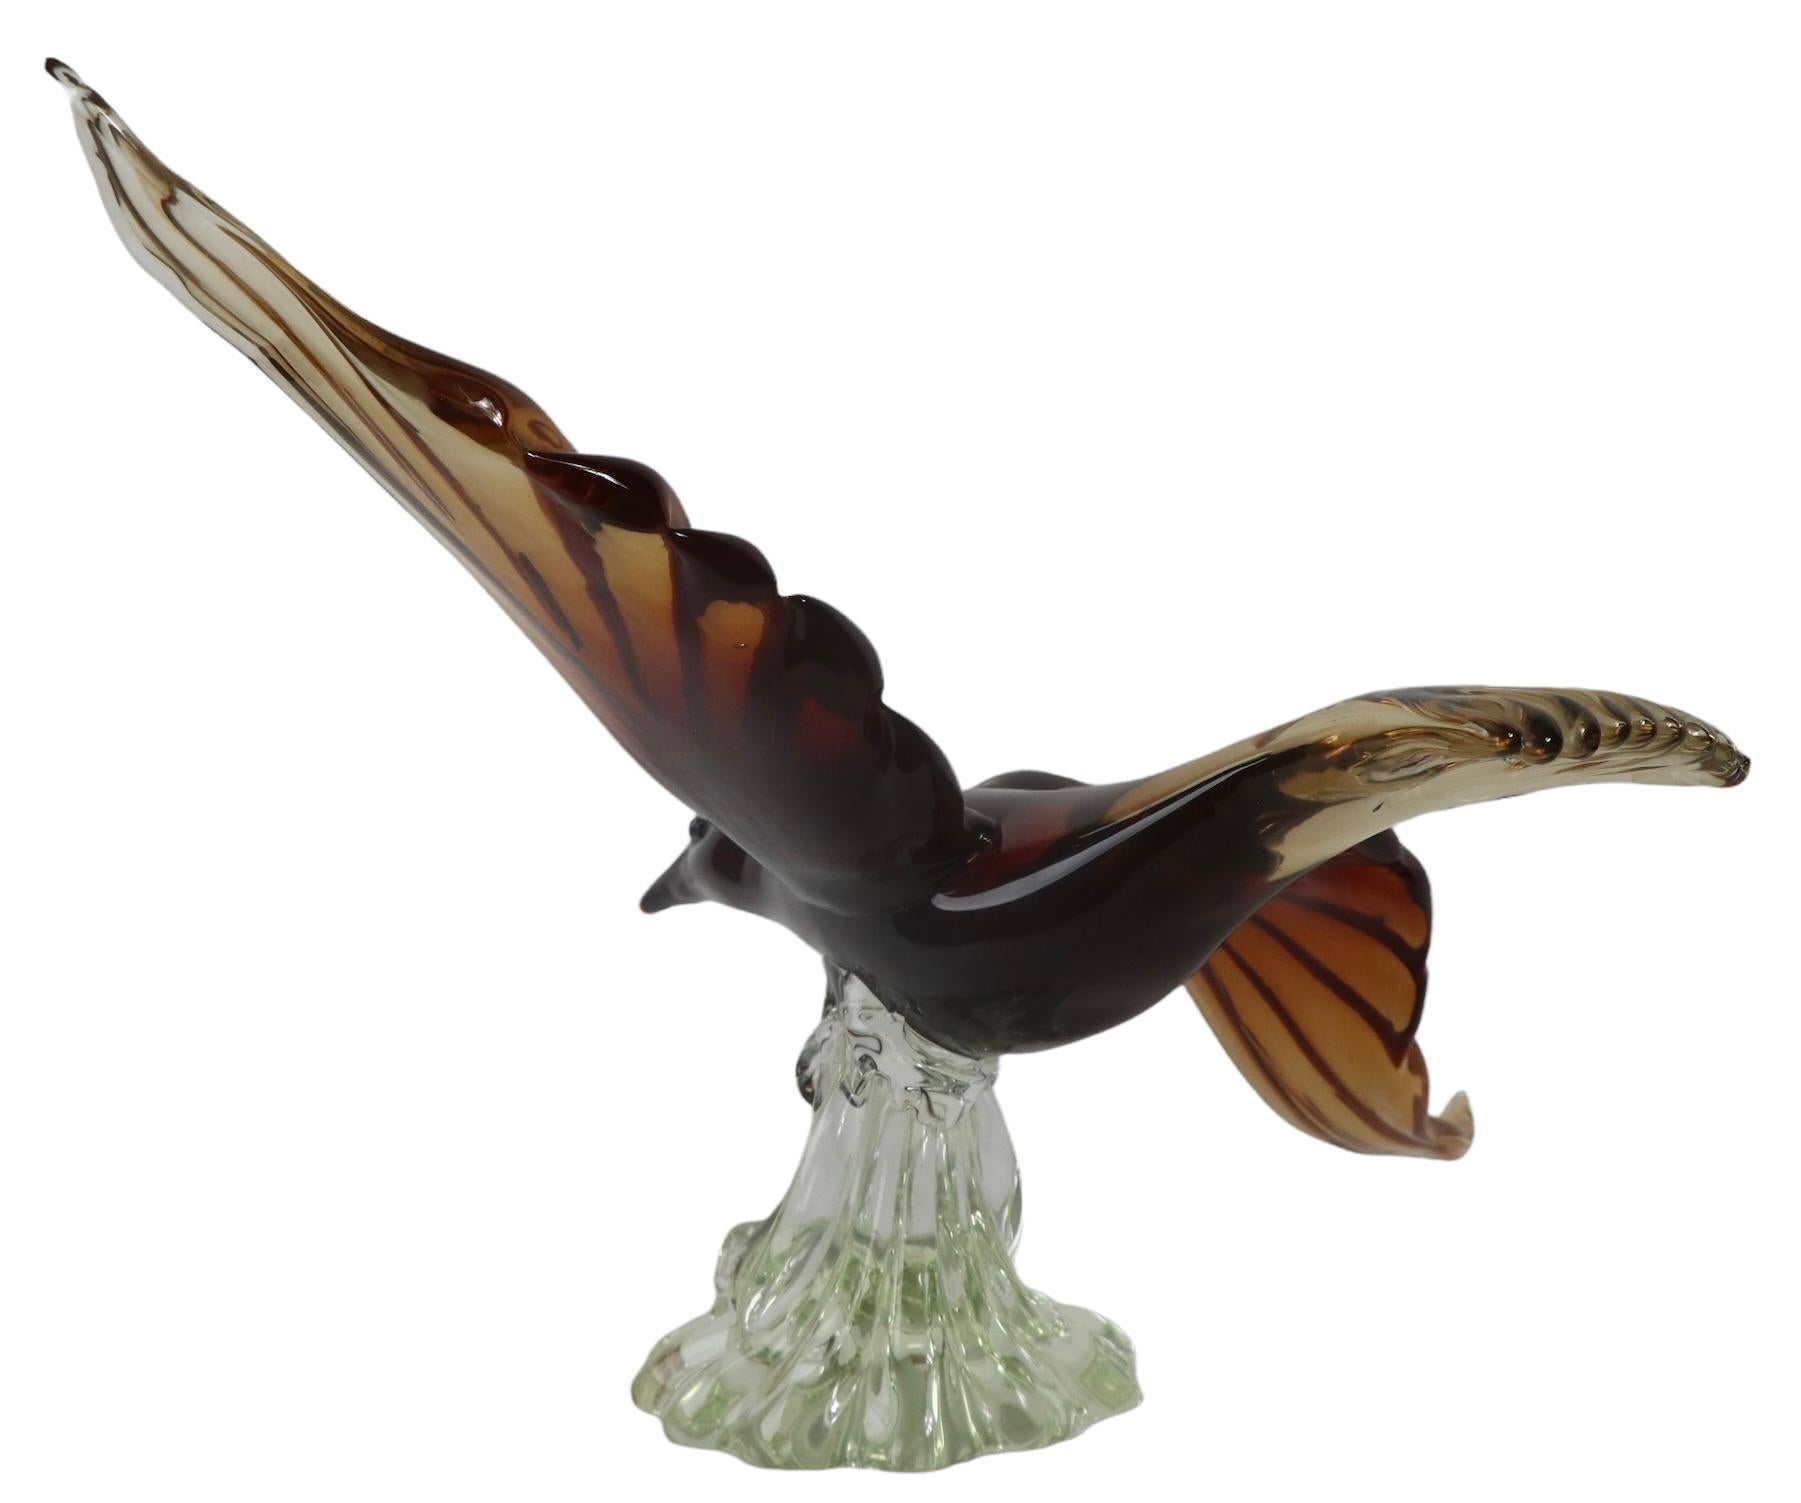 Spectaculaire sculpture d'oiseau en vol réalisée à Murano, en Italie, par Barovier. Cette impressionnante sculpture en verre est en parfait état, sans dommages ni réparations. Le socle organique en verre transparent supporte l'oiseau rouge/brun, je